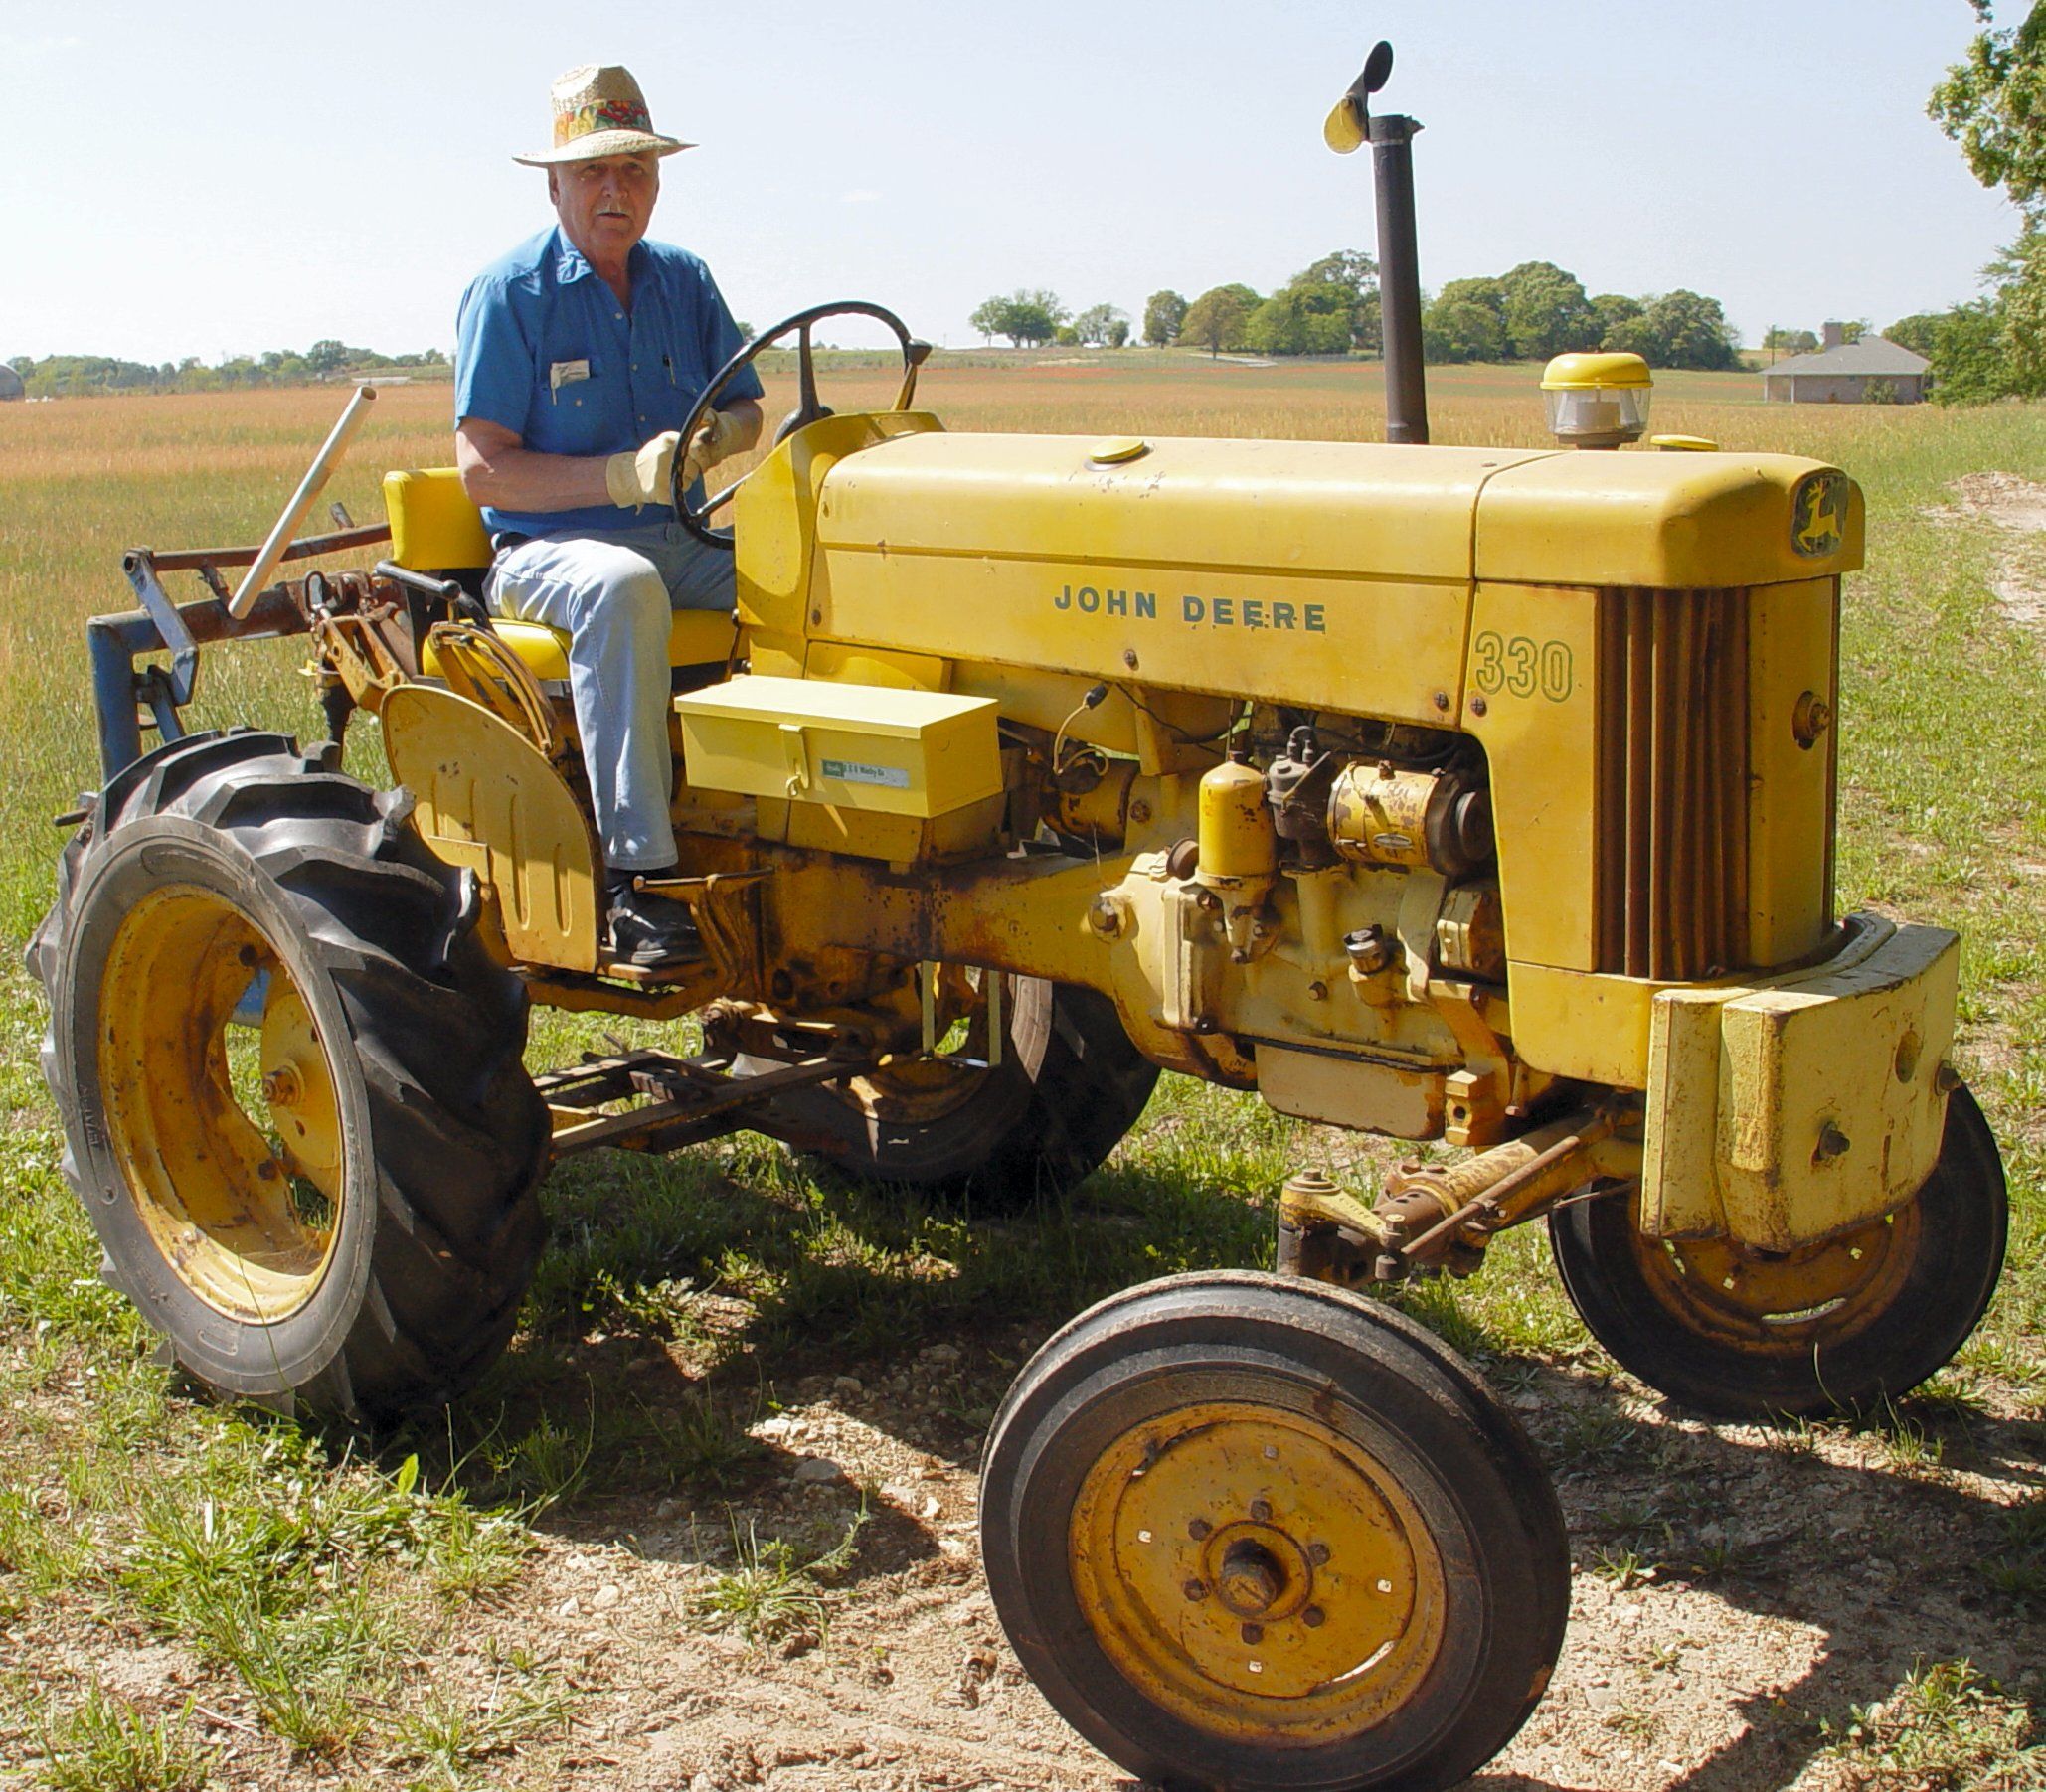 farmer on tractor - Google zoeken | John deere | Pinterest | Tractor